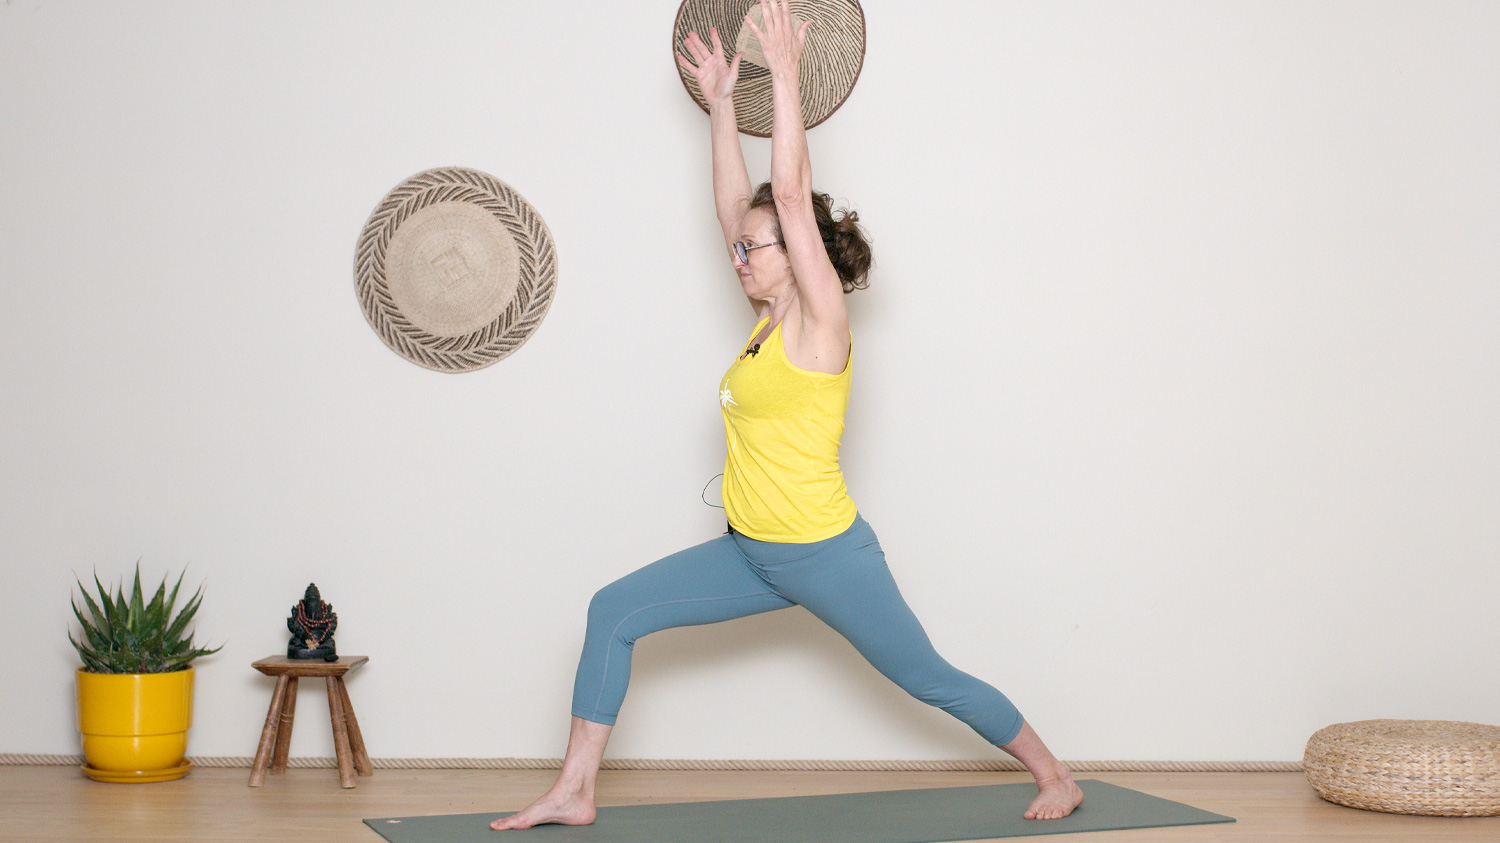 Les salutations A et B | Cours de yoga en ligne avec Delphine Denis | Hatha Yoga dynamique, Yoga Vinyasa